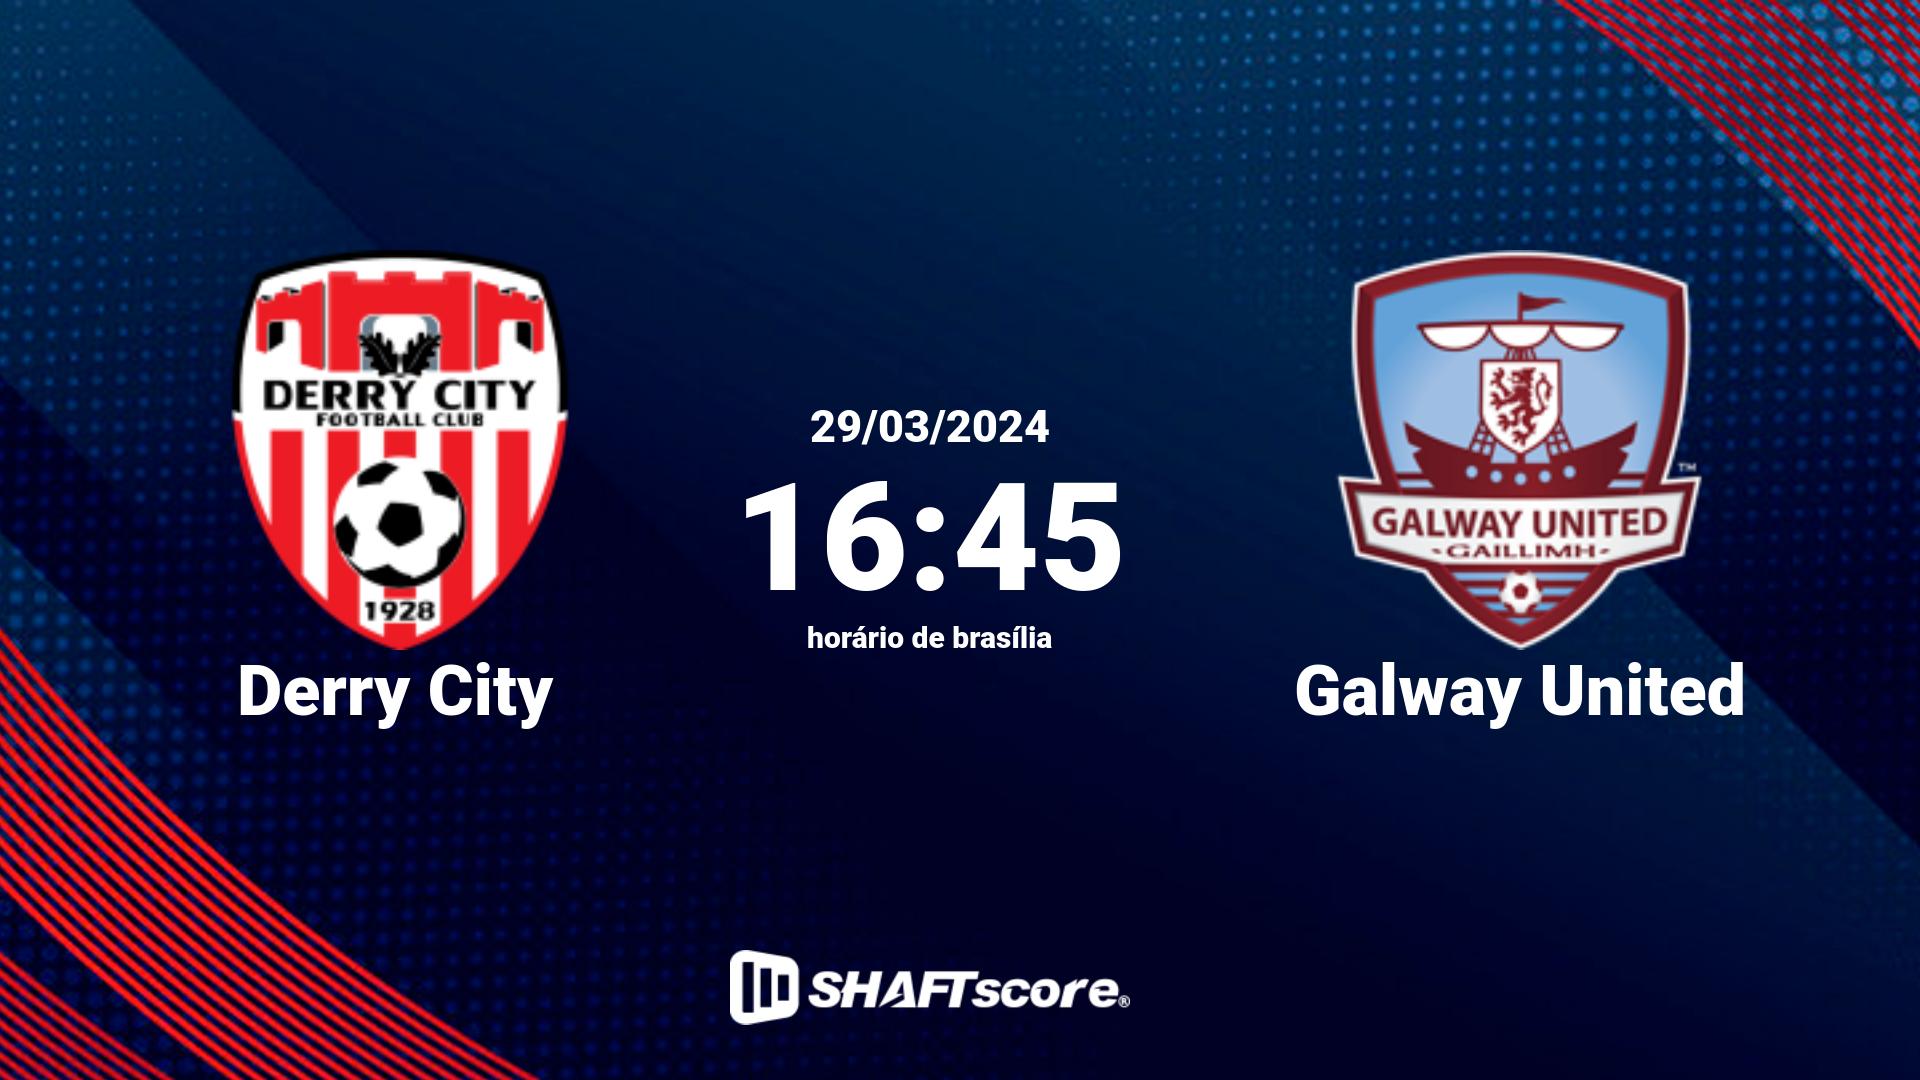 Estatísticas do jogo Derry City vs Galway United 29.03 16:45